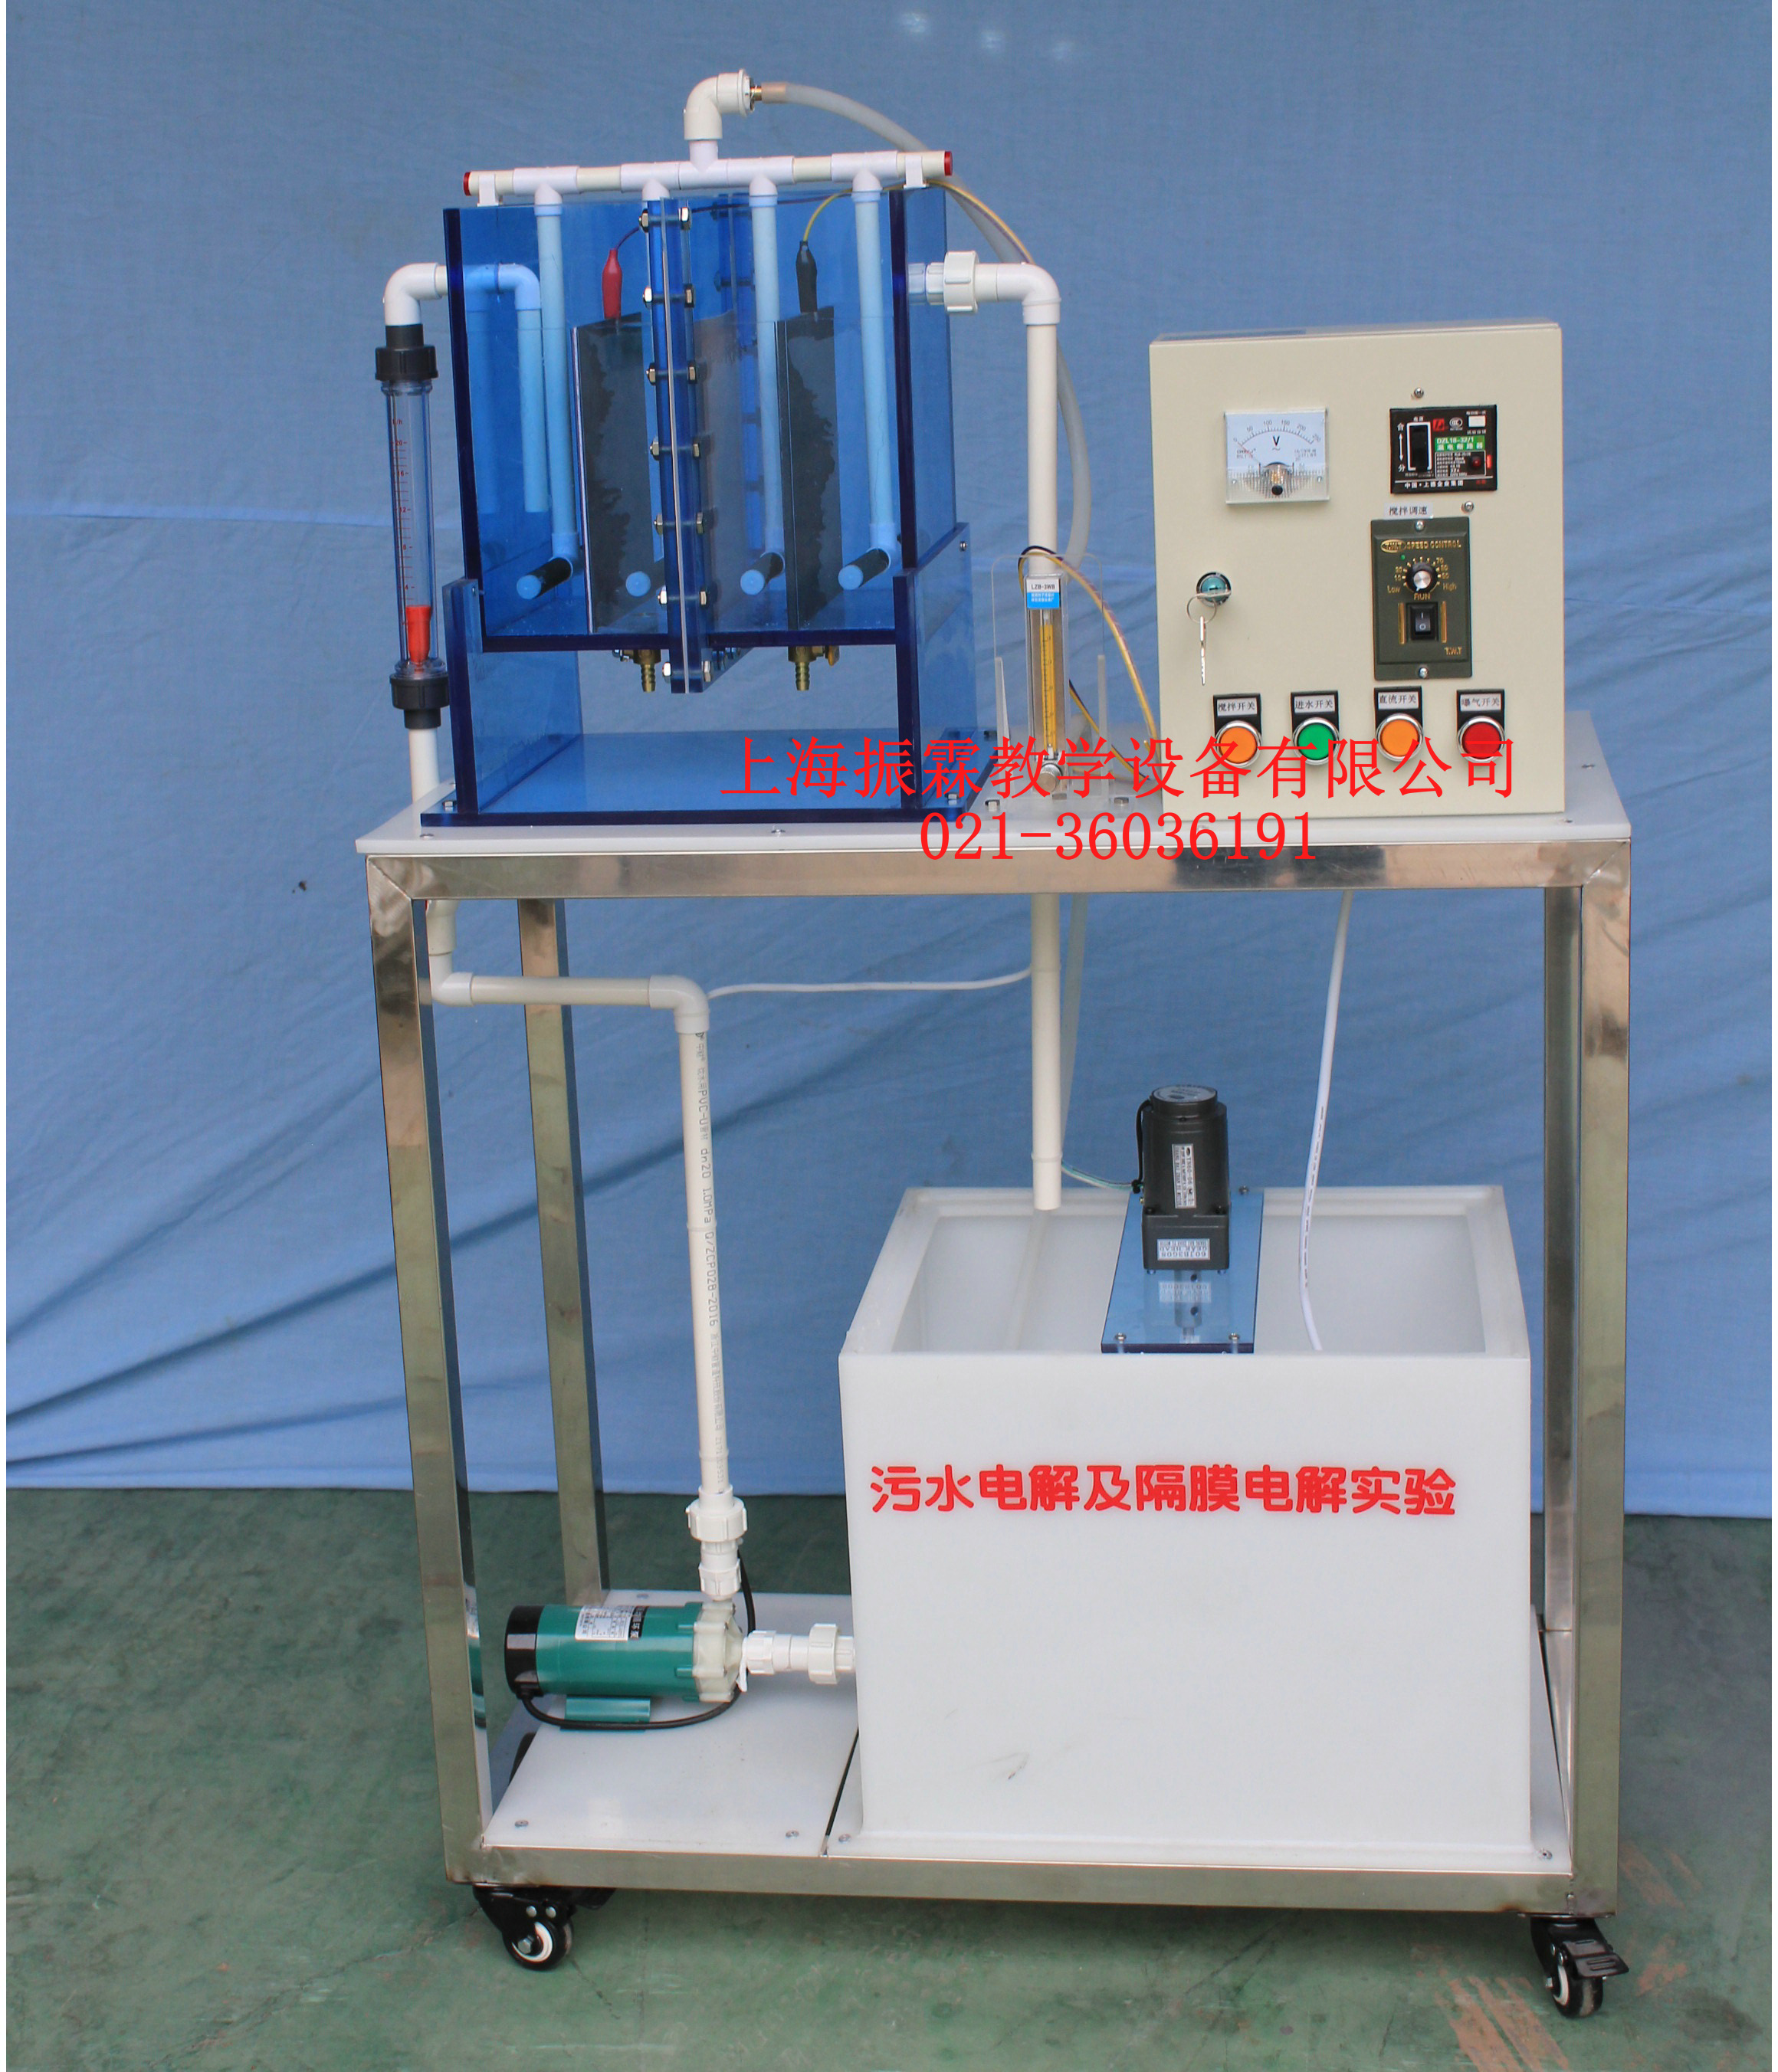 隔膜电解实验装置,隔膜电解实验设备--上海振霖公司